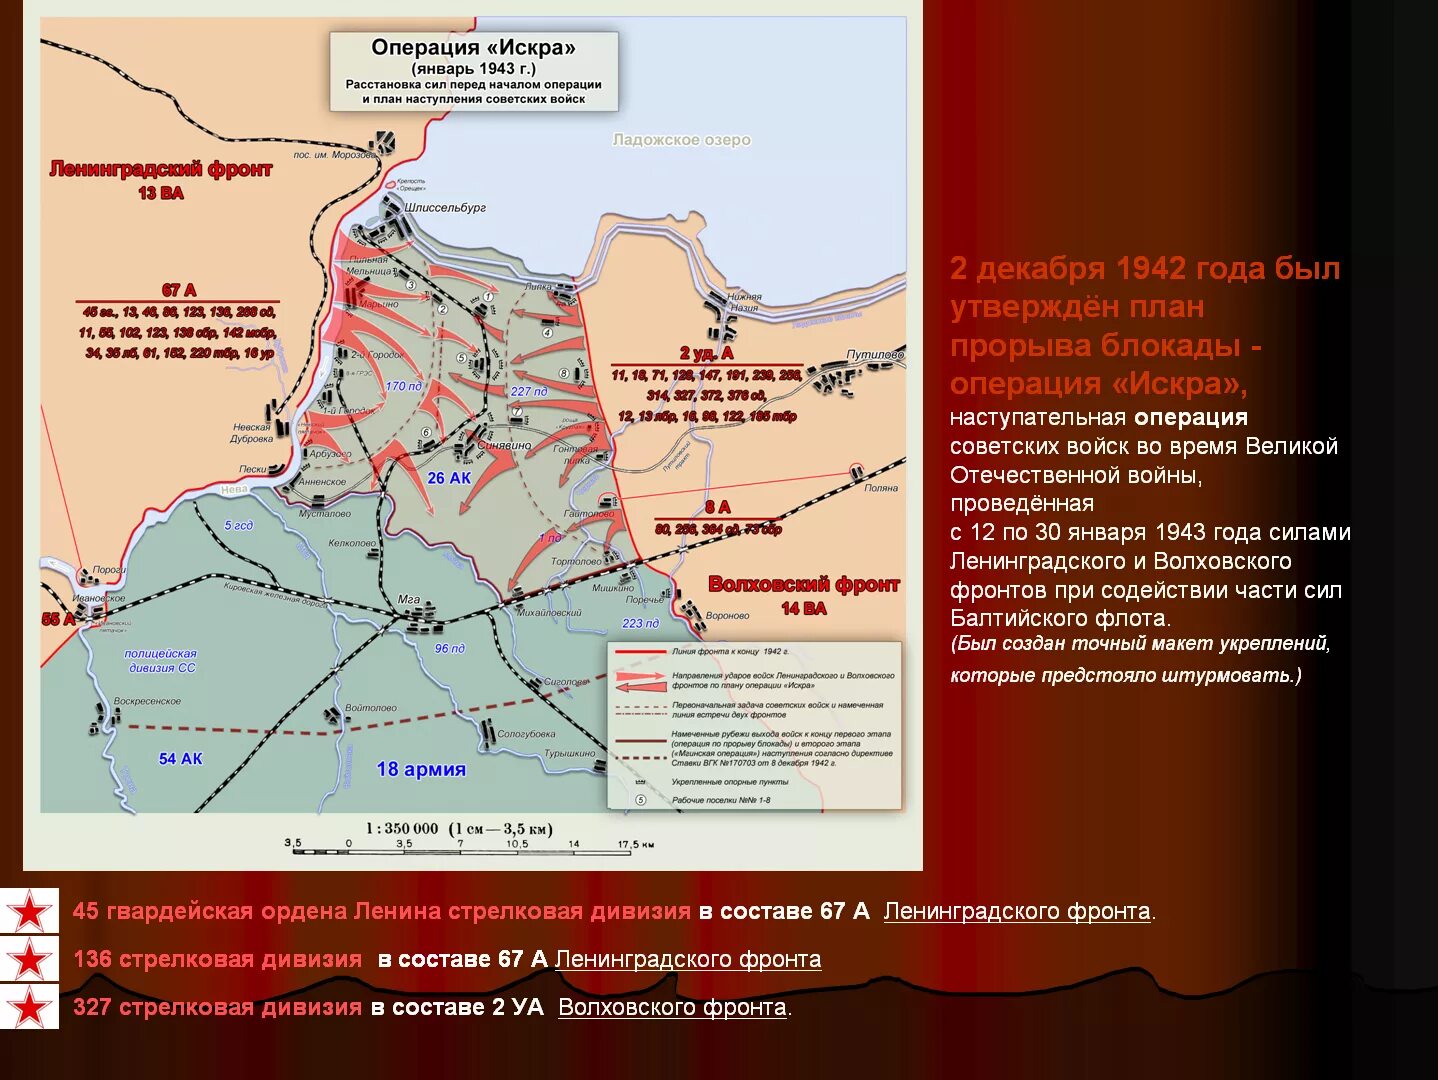 Прорыв блокады 1943 года. Прорыв блокады Ленинграда (12–30 января 1943). Карта прорыва блокады Ленинграда в 1943 году.